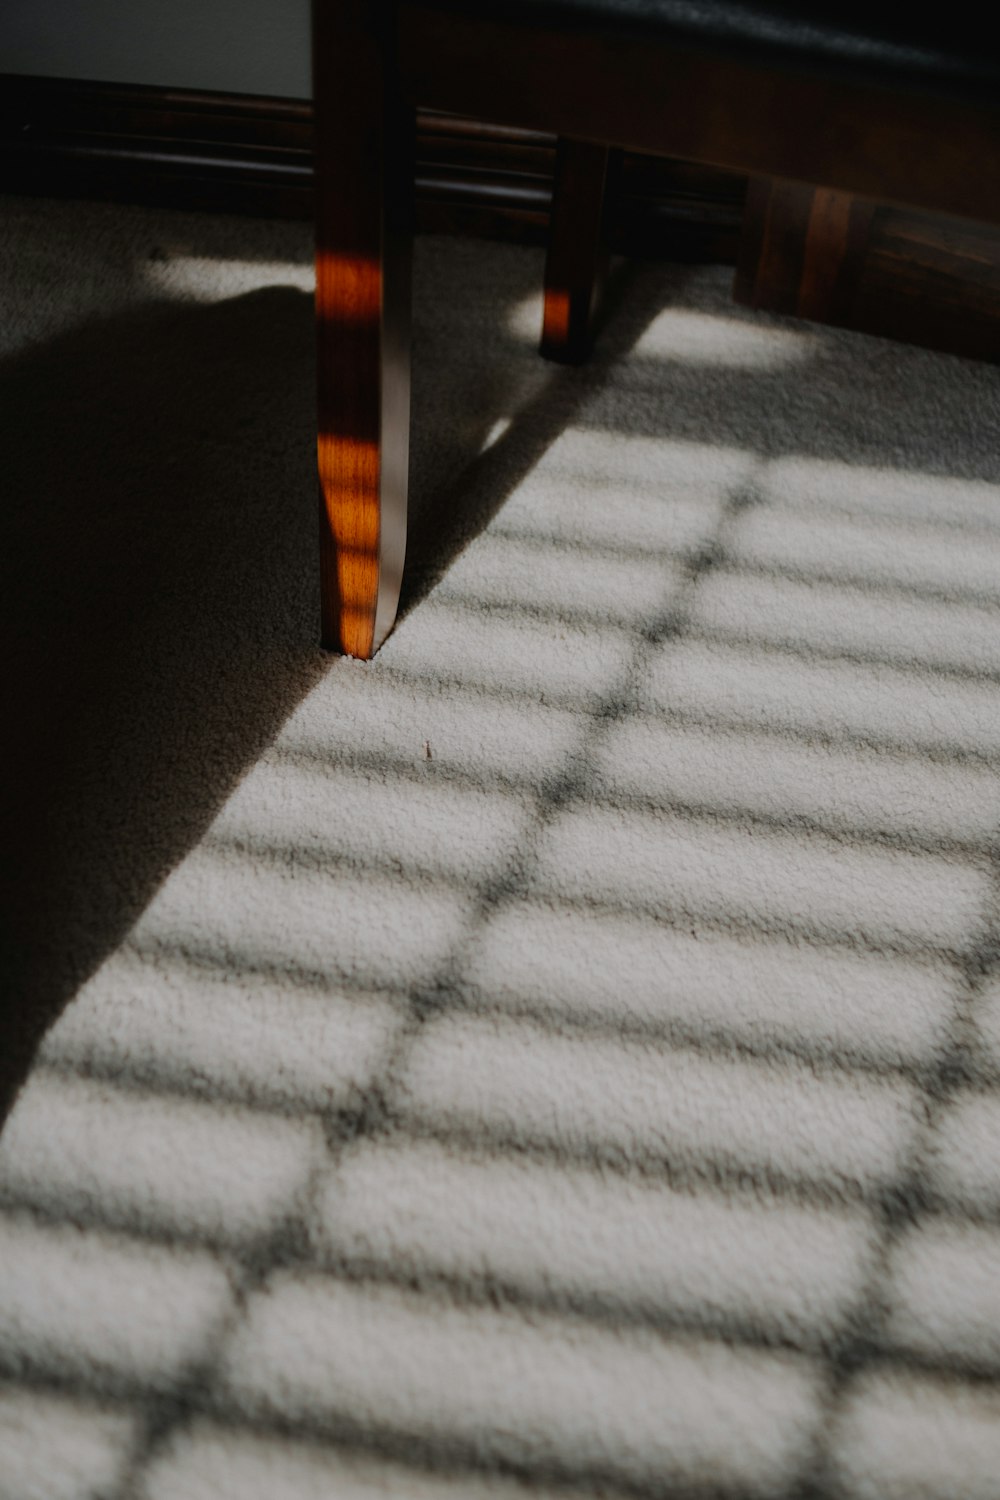 La sombra de un banco sobre una alfombra